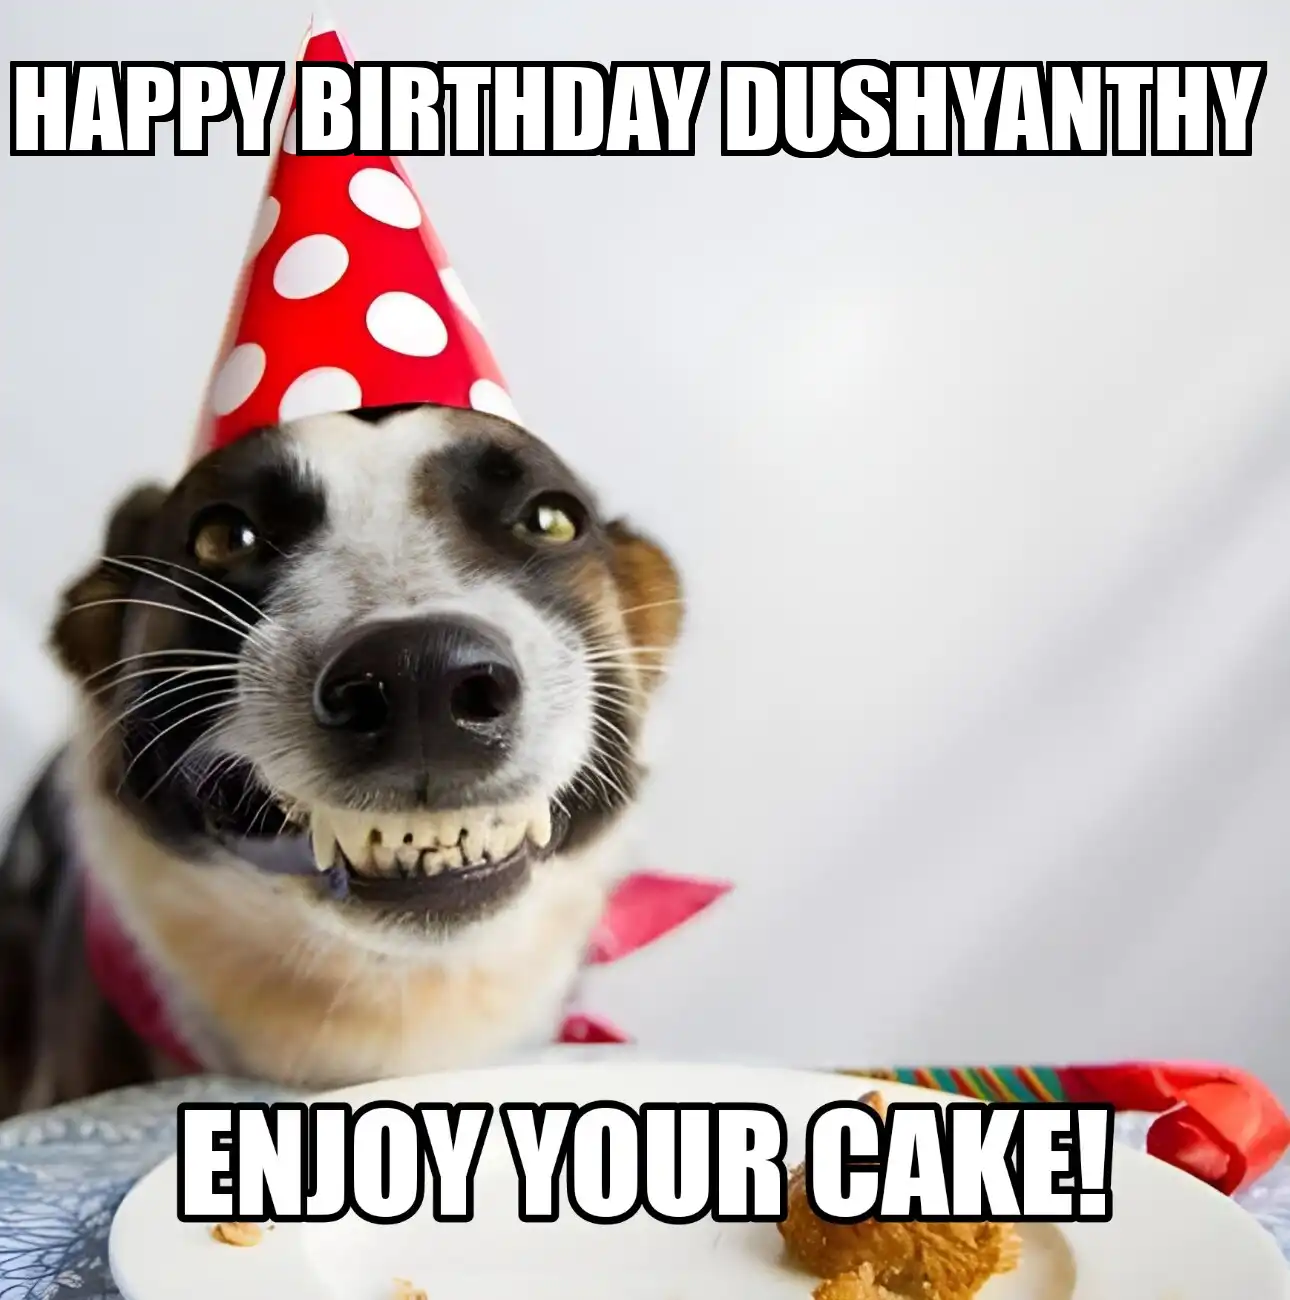 Happy Birthday Dushyanthy Enjoy Your Cake Dog Meme